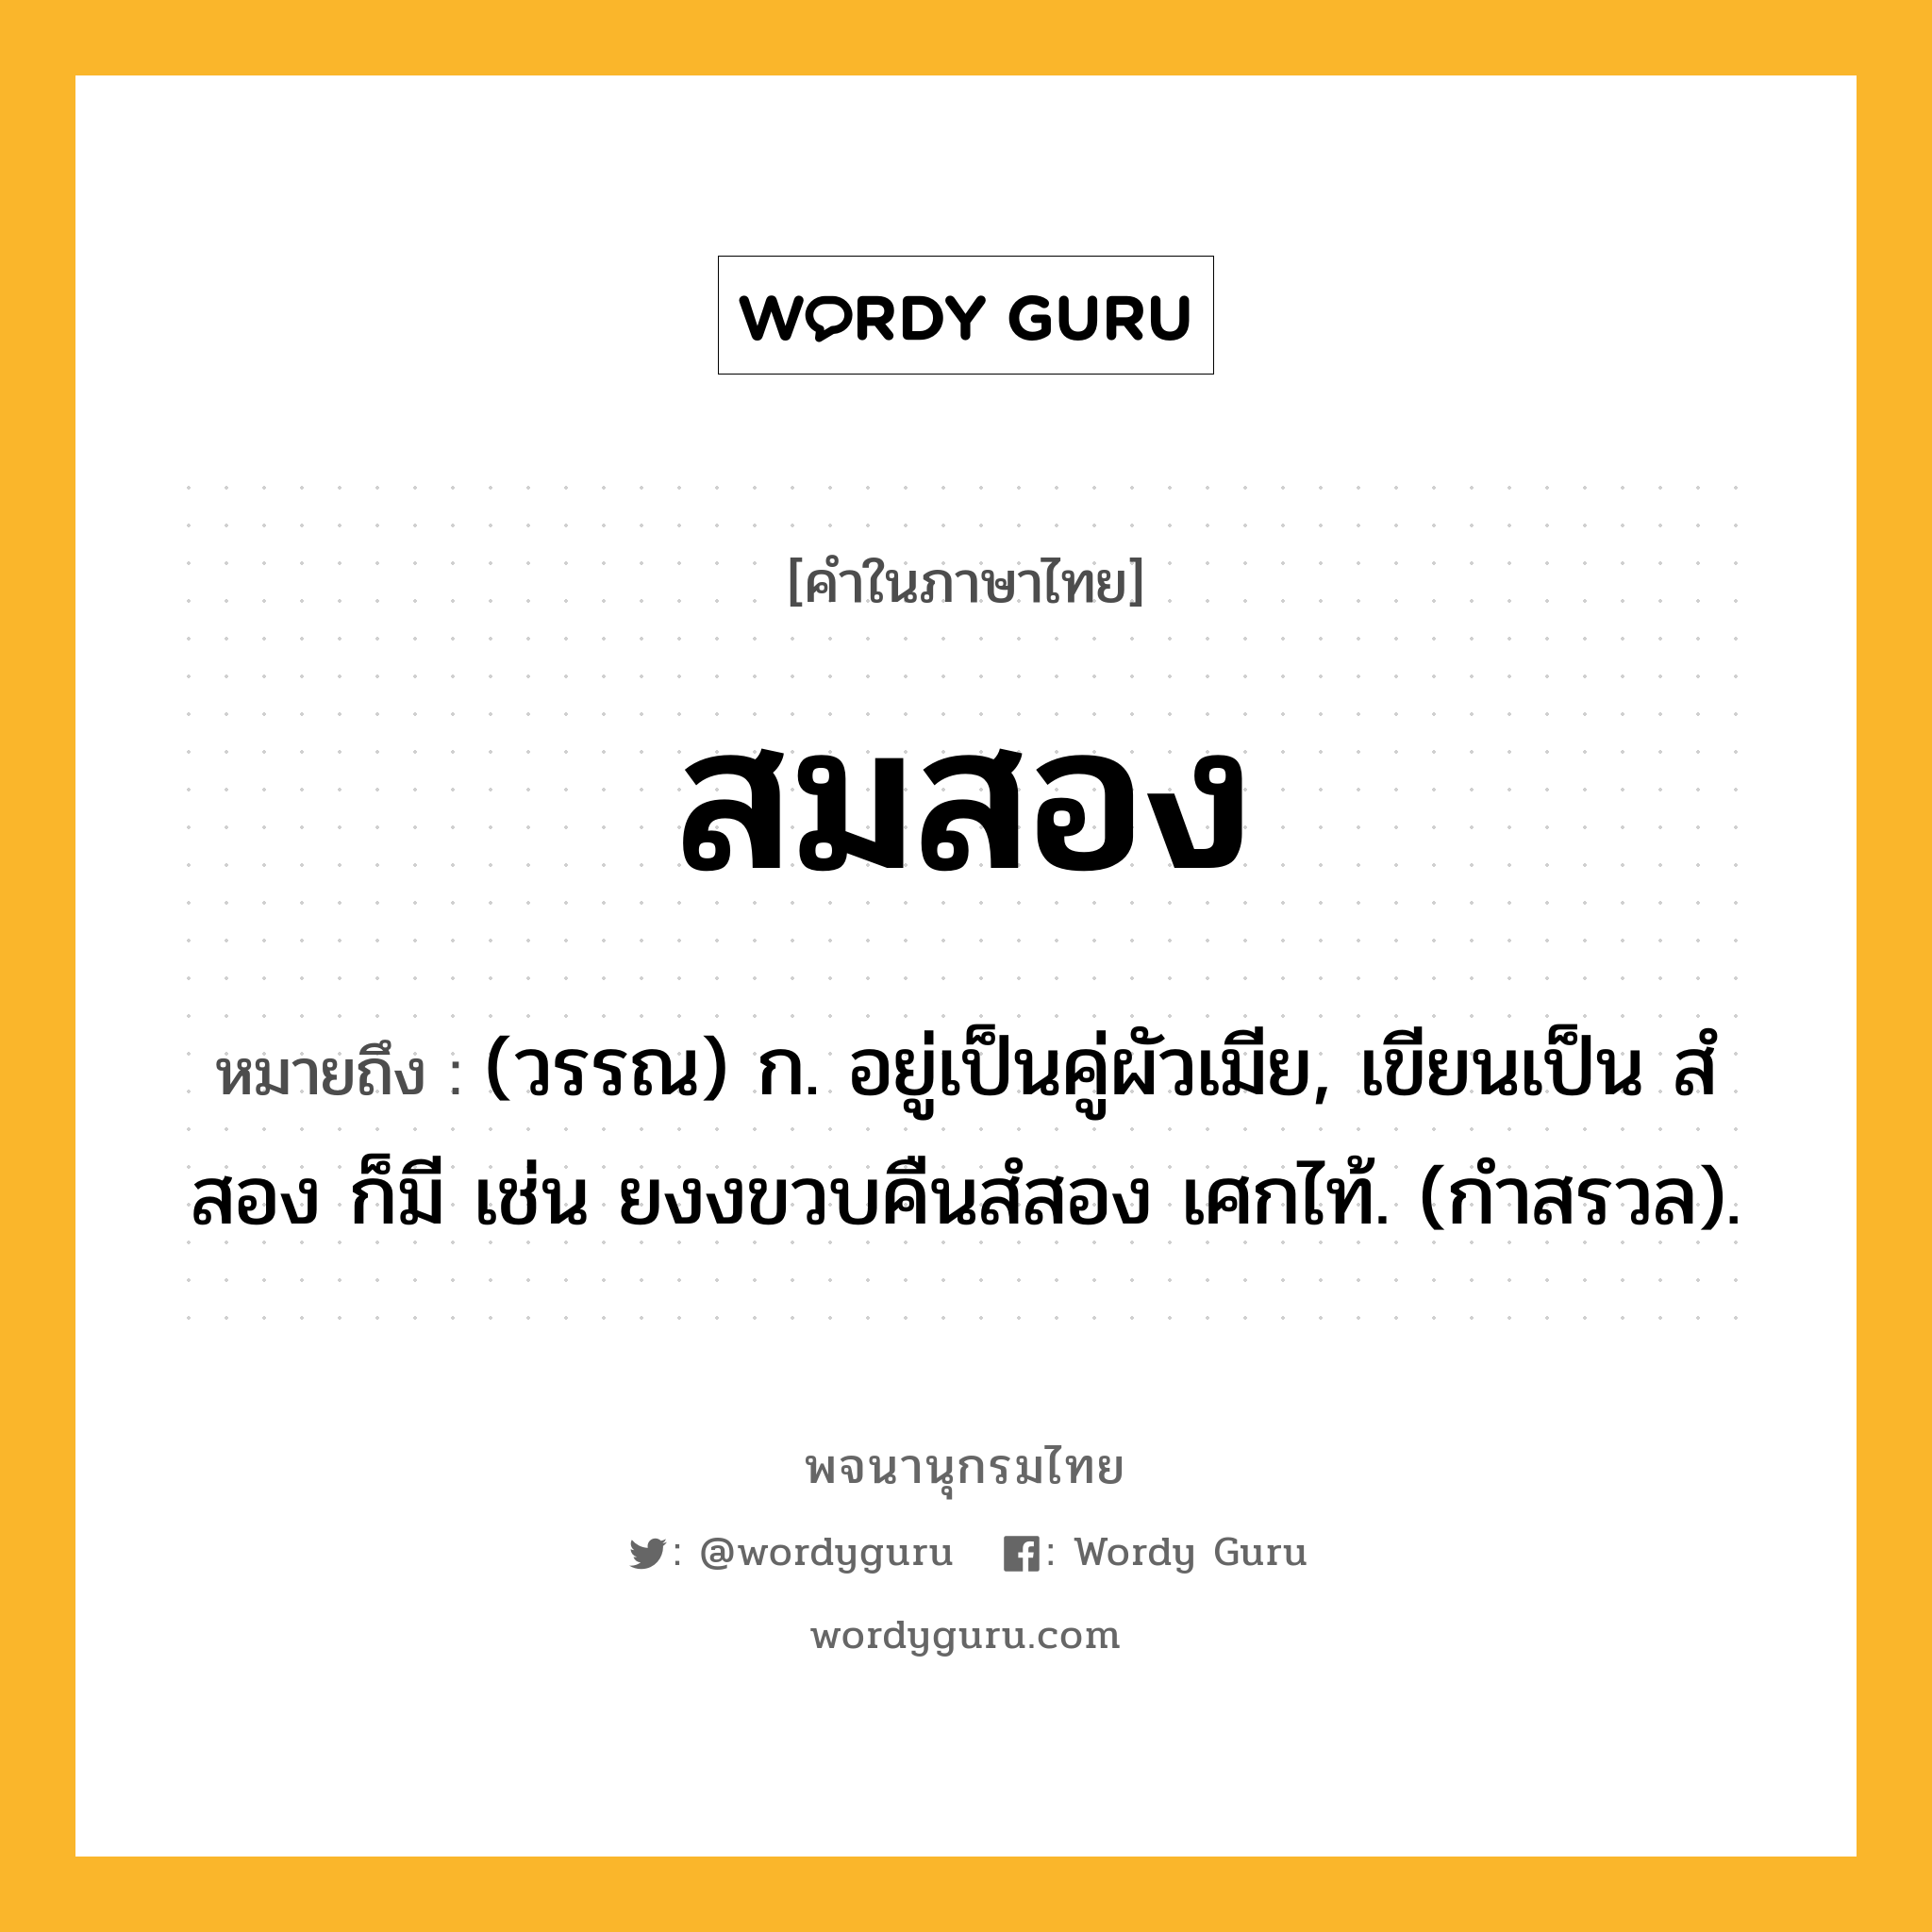 สมสอง ความหมาย หมายถึงอะไร?, คำในภาษาไทย สมสอง หมายถึง (วรรณ) ก. อยู่เป็นคู่ผัวเมีย, เขียนเป็น สํสอง ก็มี เช่น ยงงขวบคืนสํสอง เศกไท้. (กำสรวล).